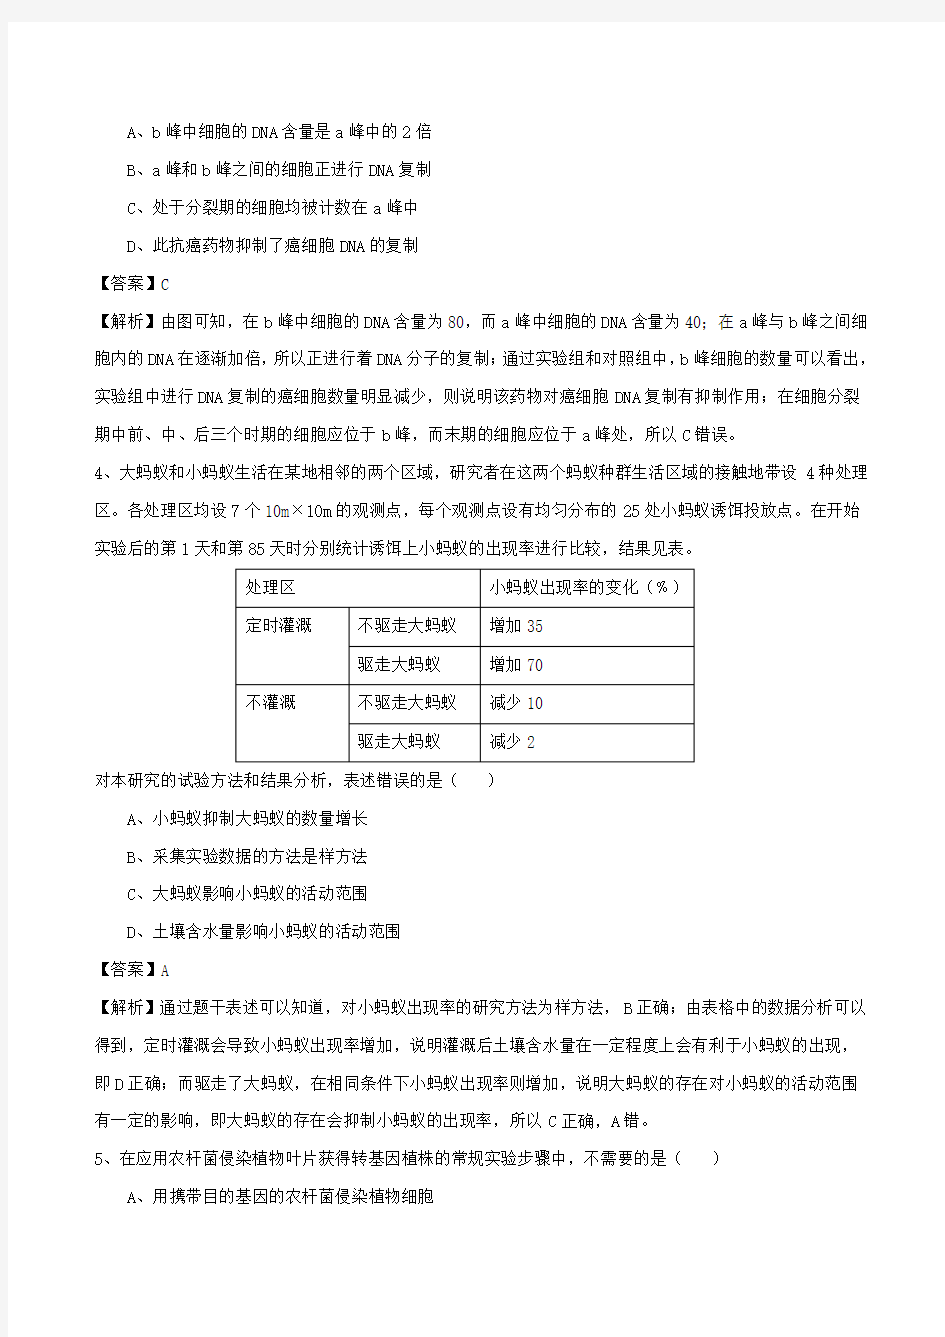 2015年高考试题生物(北京卷)解析版